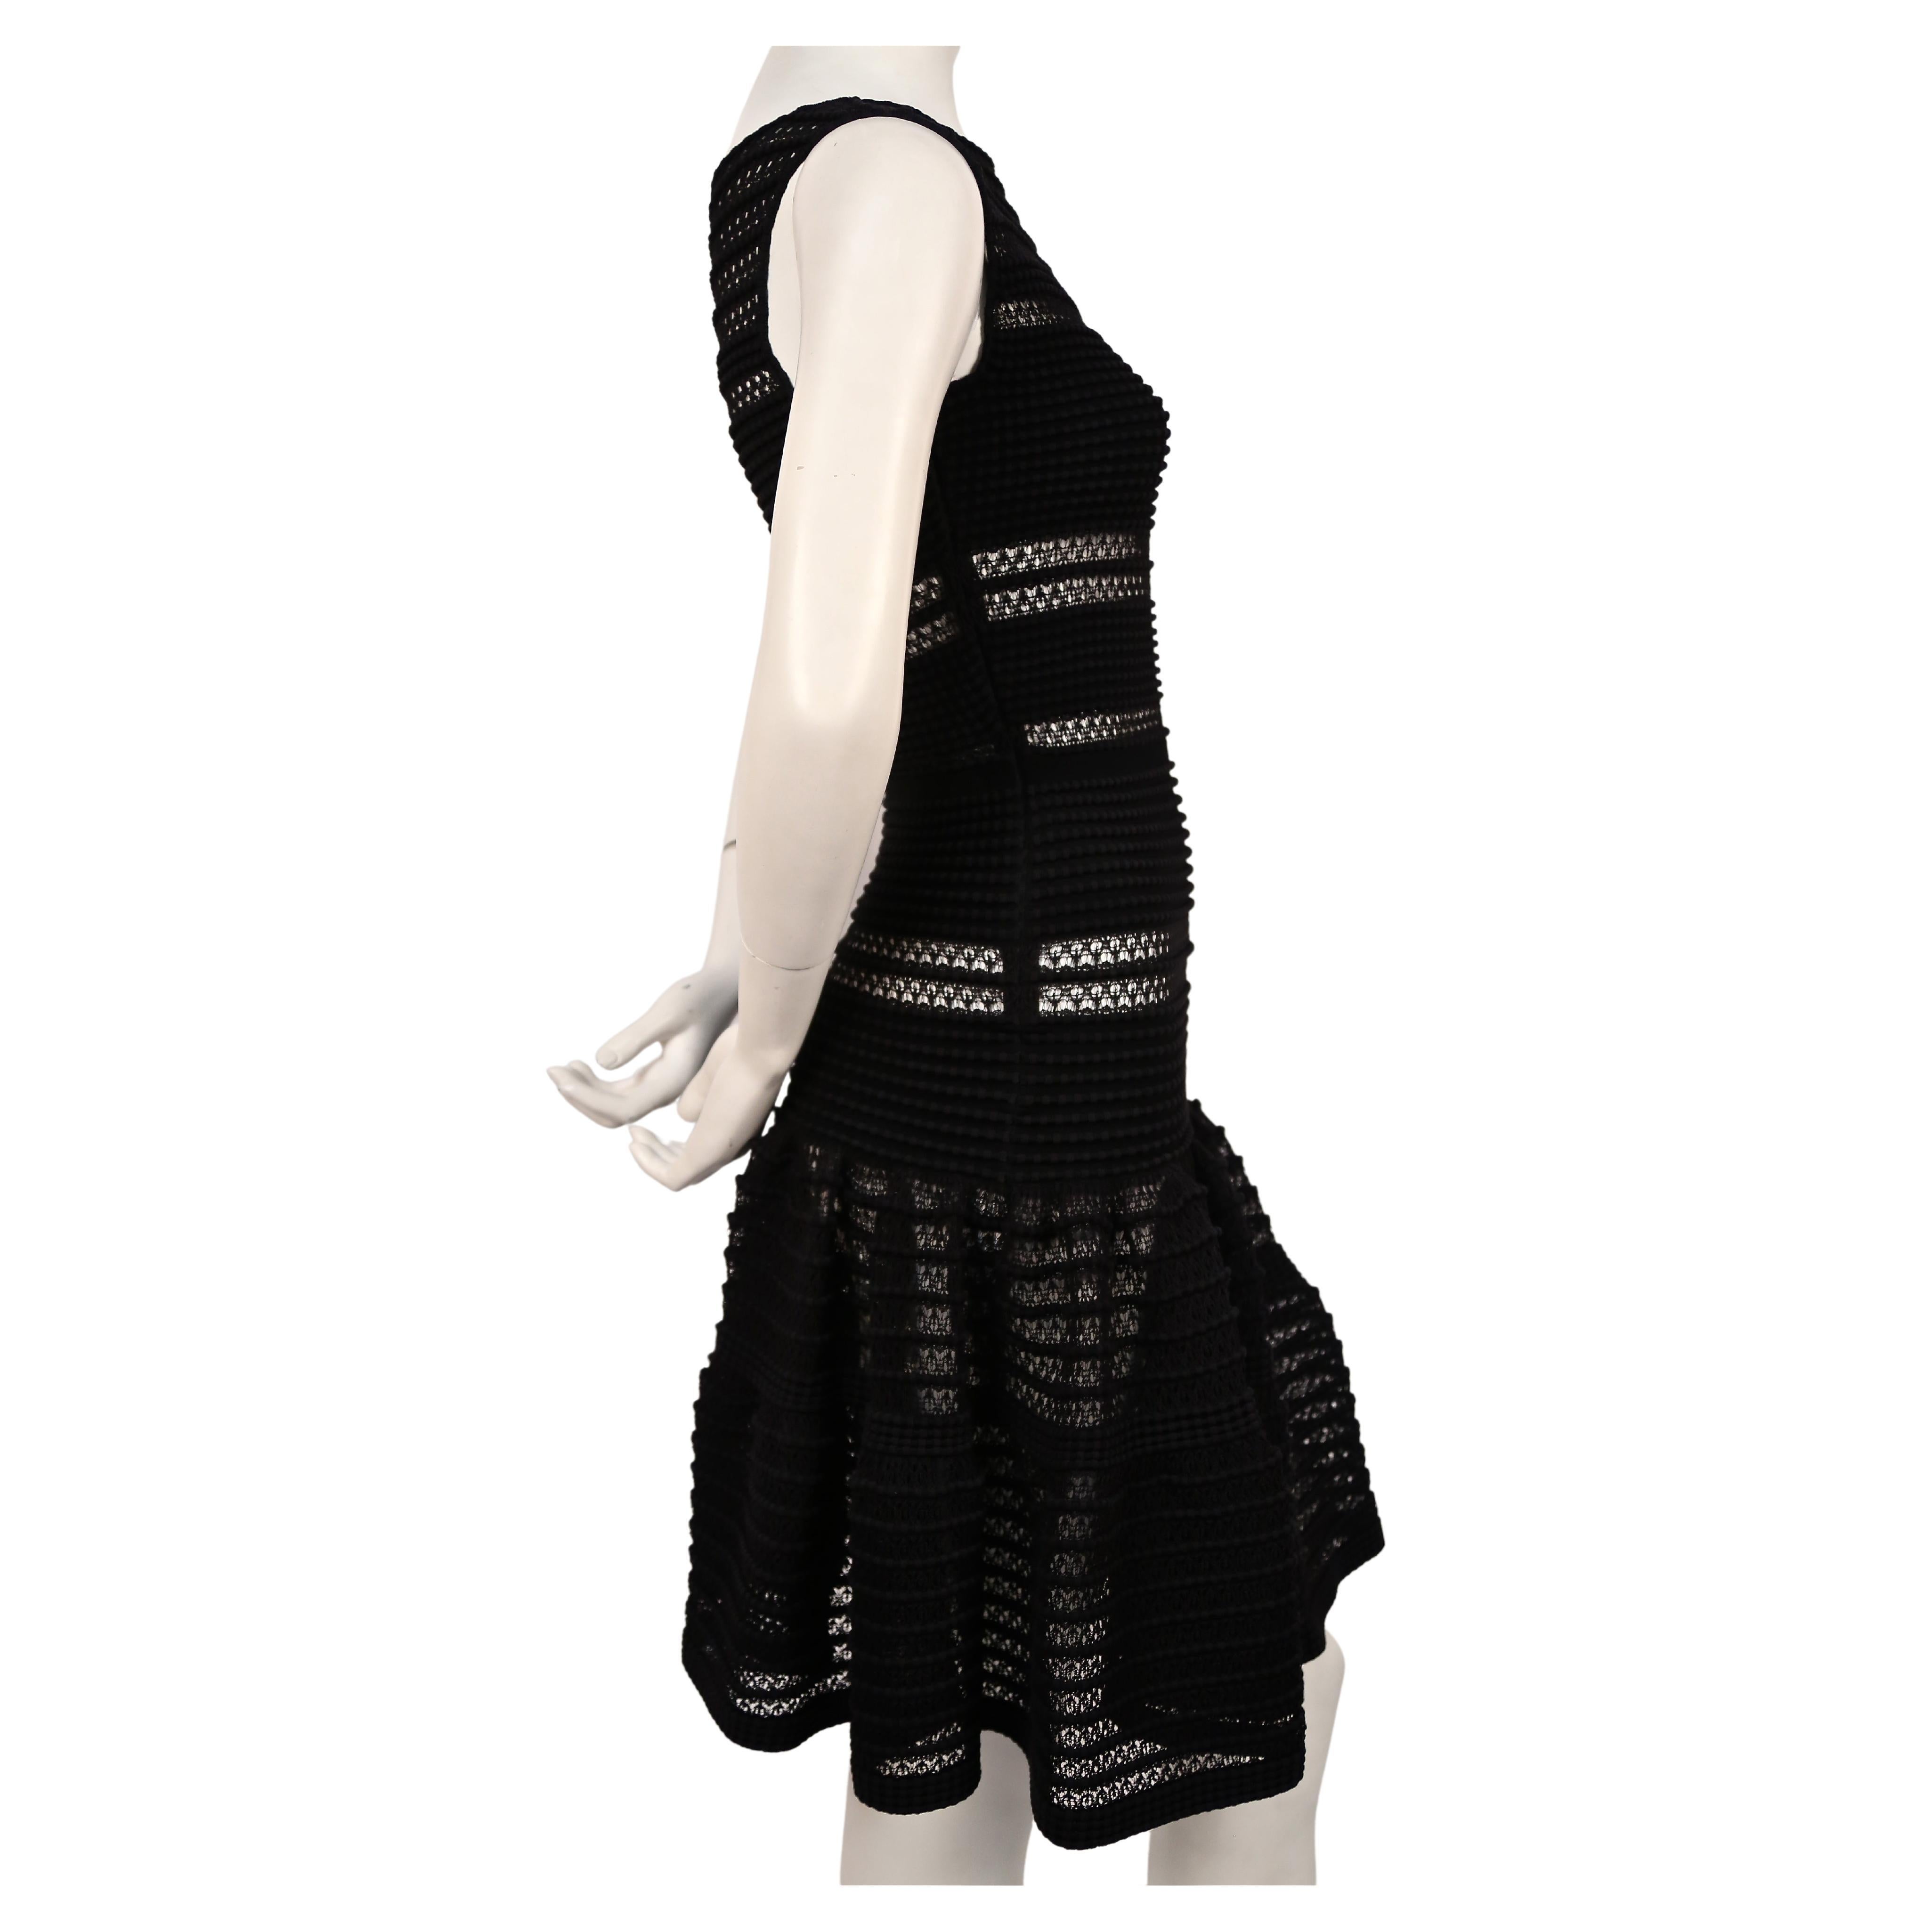 Très rare, robe noire en tricot de dentelle d'Azzedine Alaia datant d'environ 2010 . Labellisée taille S. Mesures approximatives (sans étirement) : buste 30